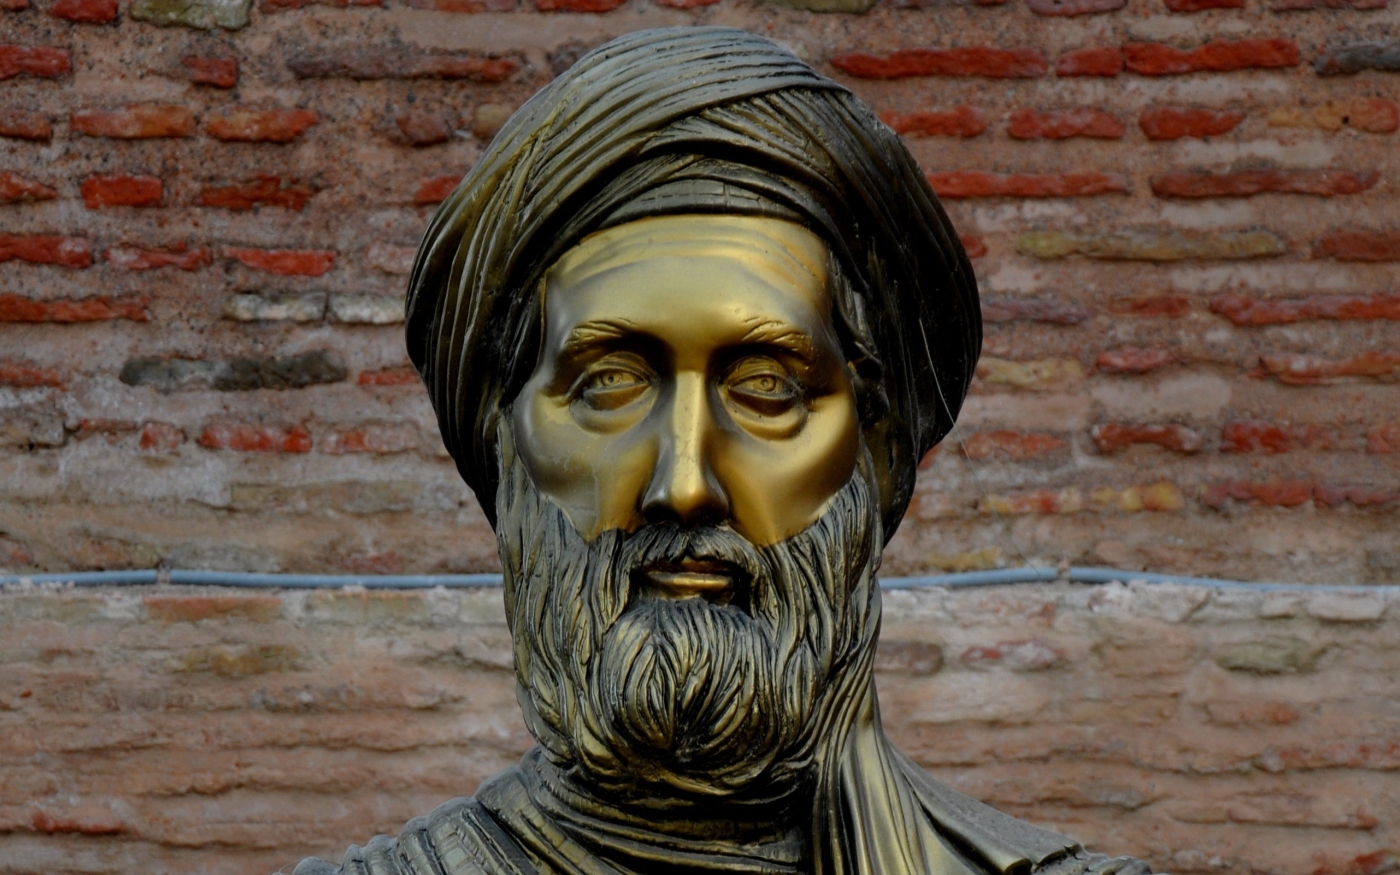 Ibn Khaldoun, représenté par cette statue en Algérie, était un détracteur de ce livre (Wikimedia)